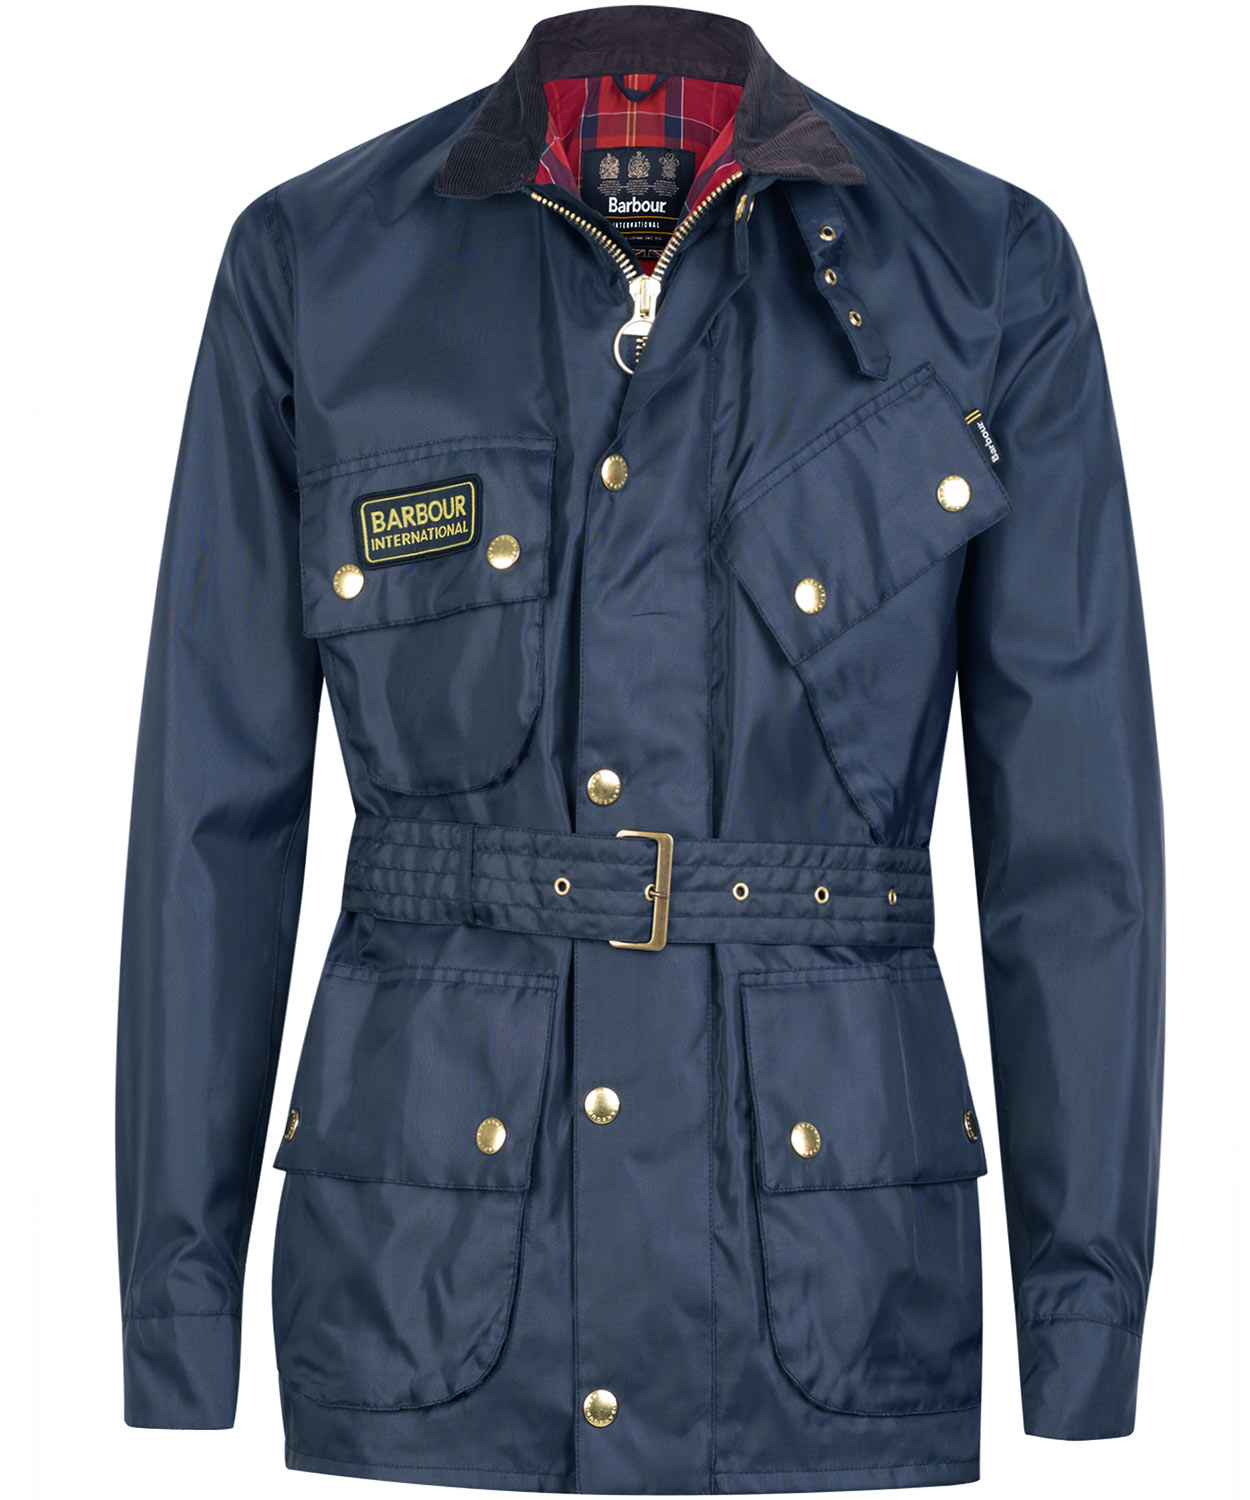 Barbour International Nylon Jacket in Navy (Blue) for Men | Lyst Australia